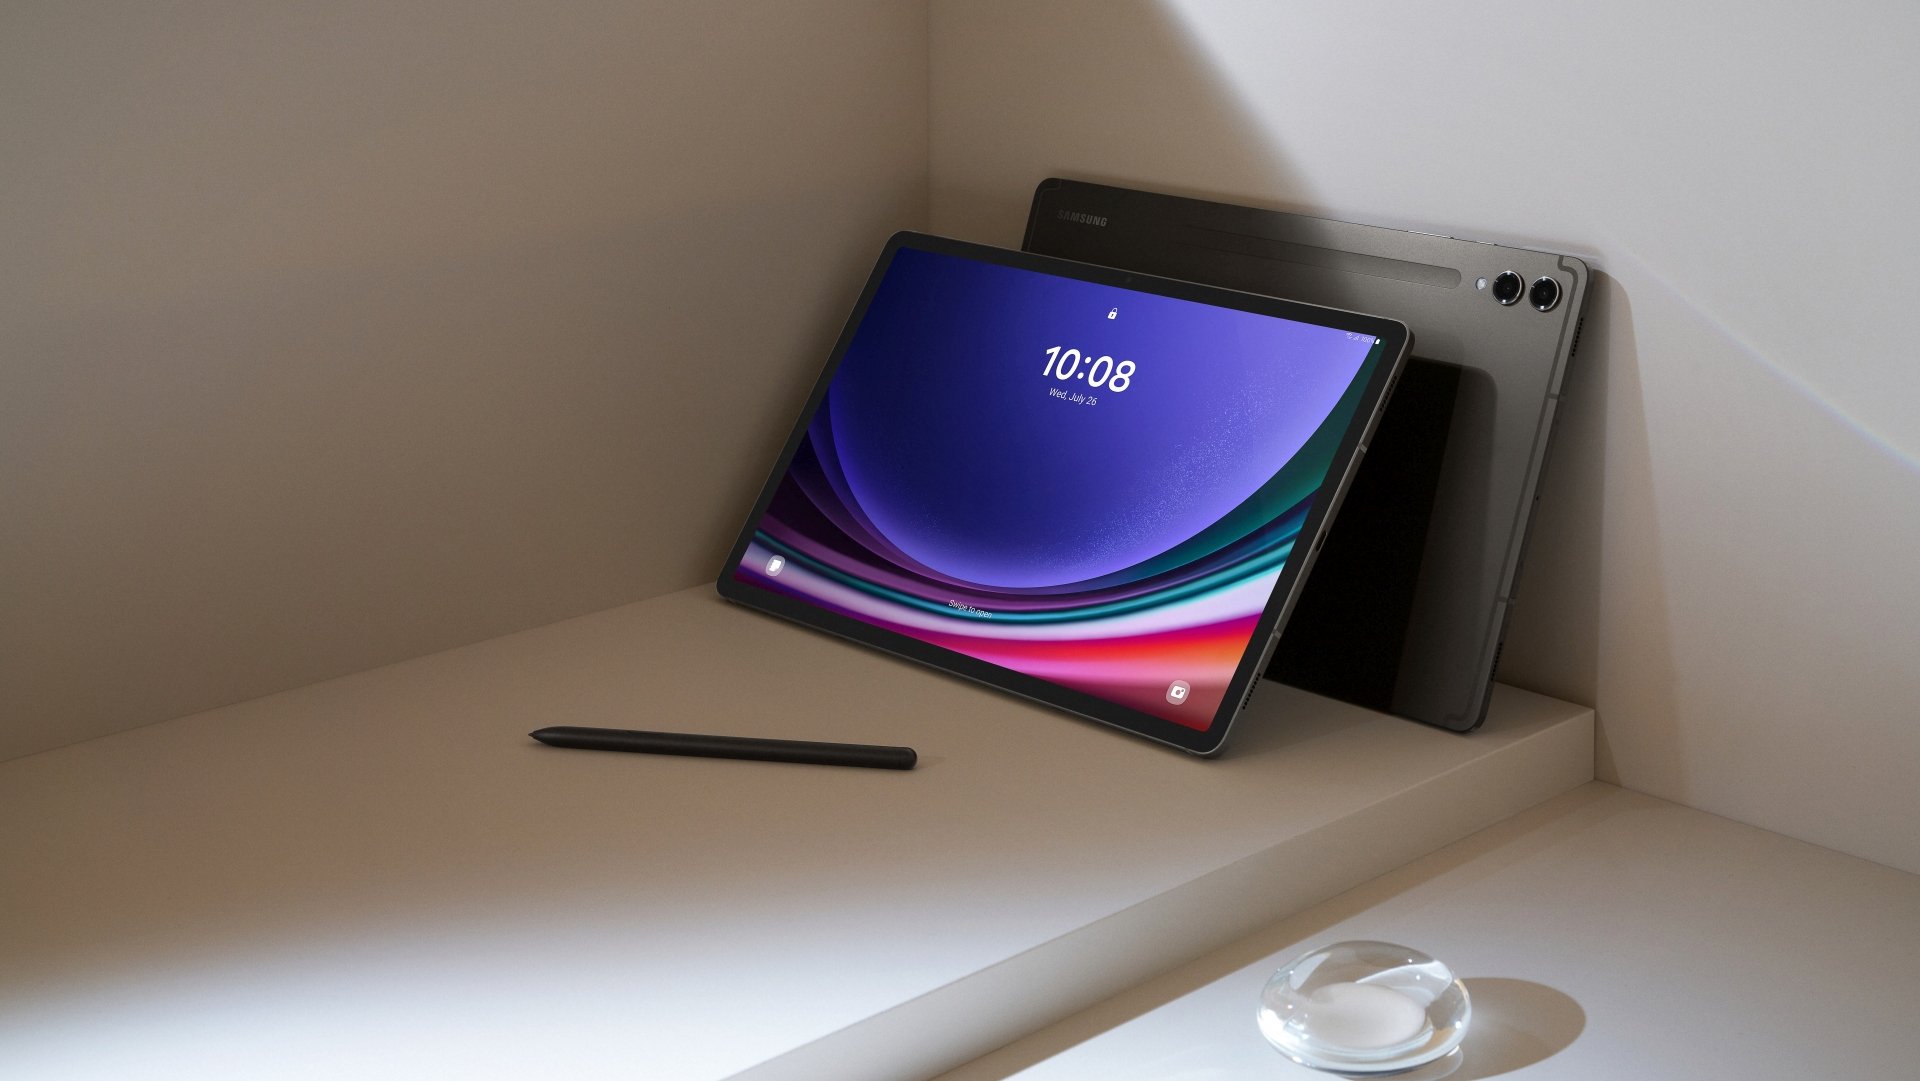 Samsung Galaxy Tab S9 Ultra - SamMobile